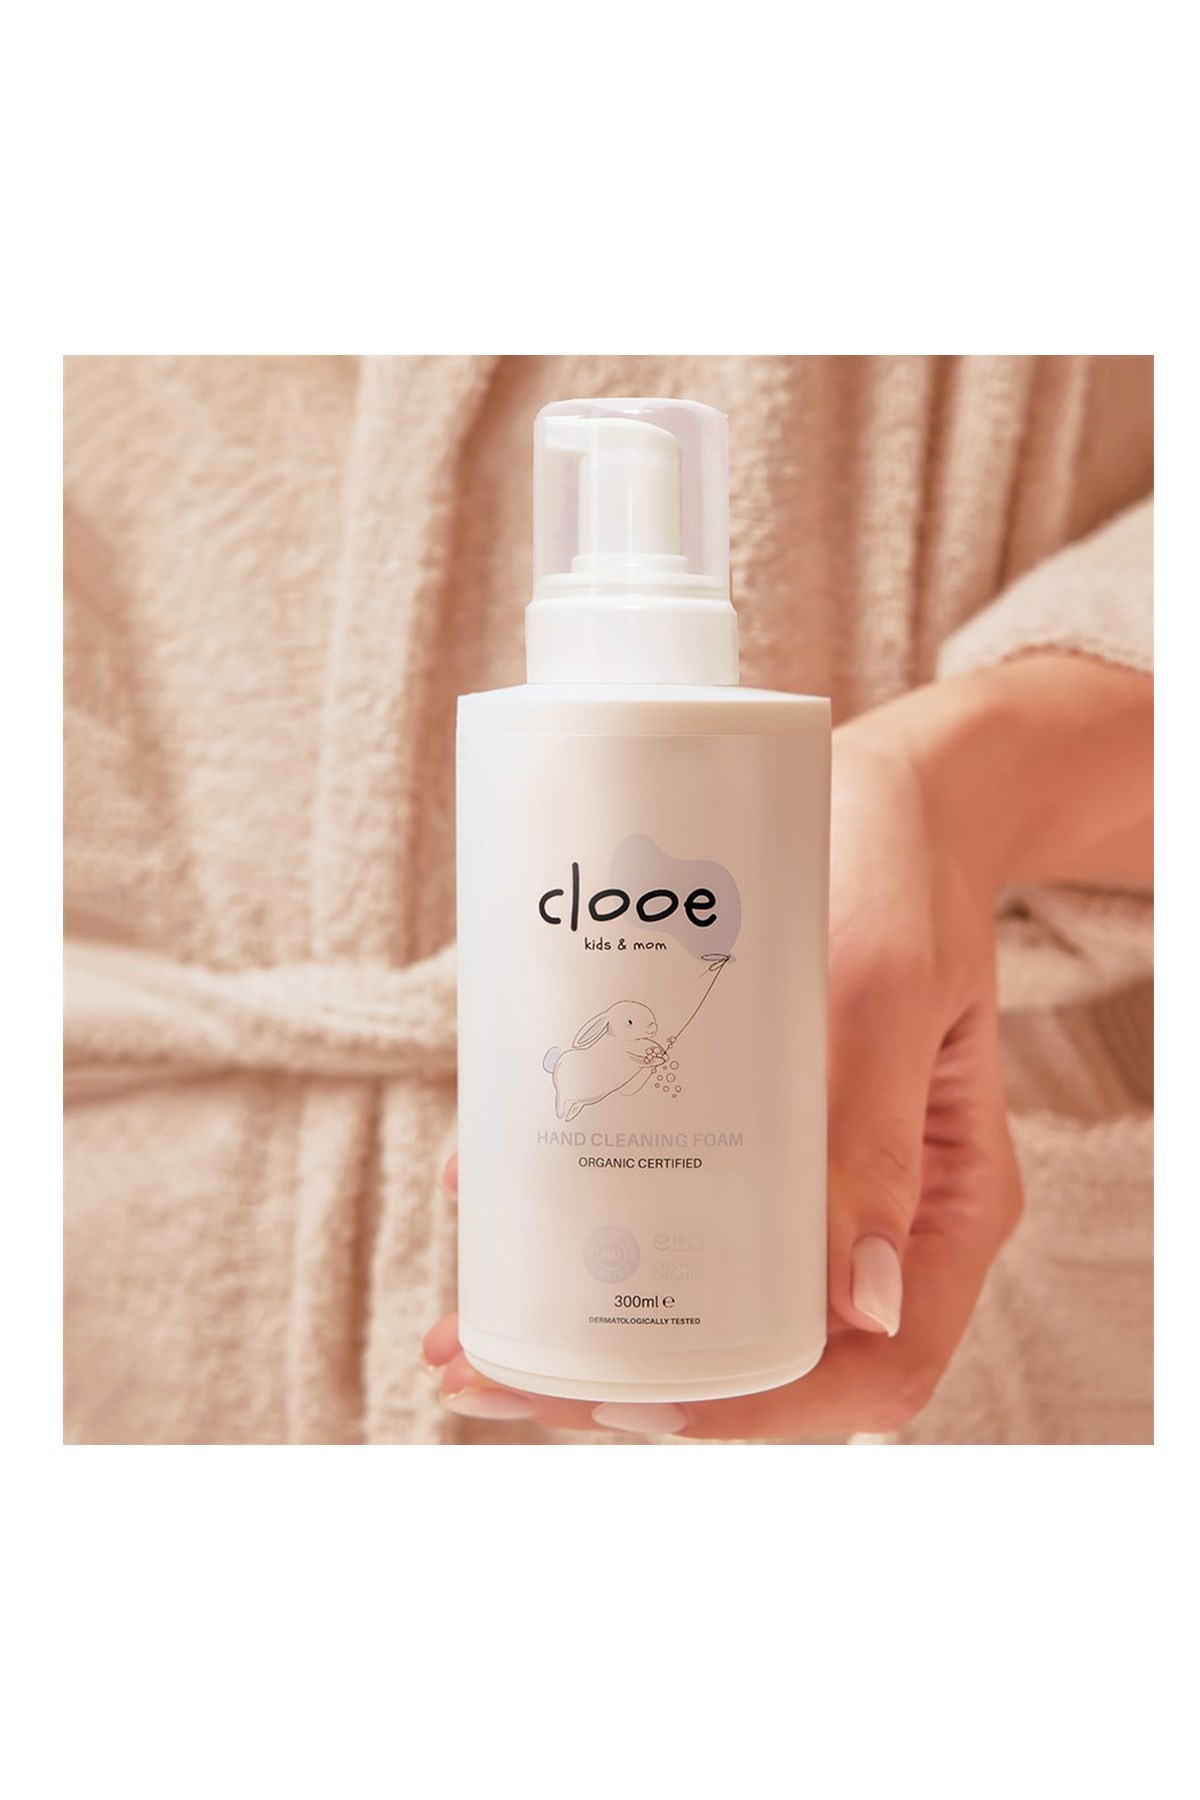 Clooe Organik Sertifikalı El Temizleme Köpüğü